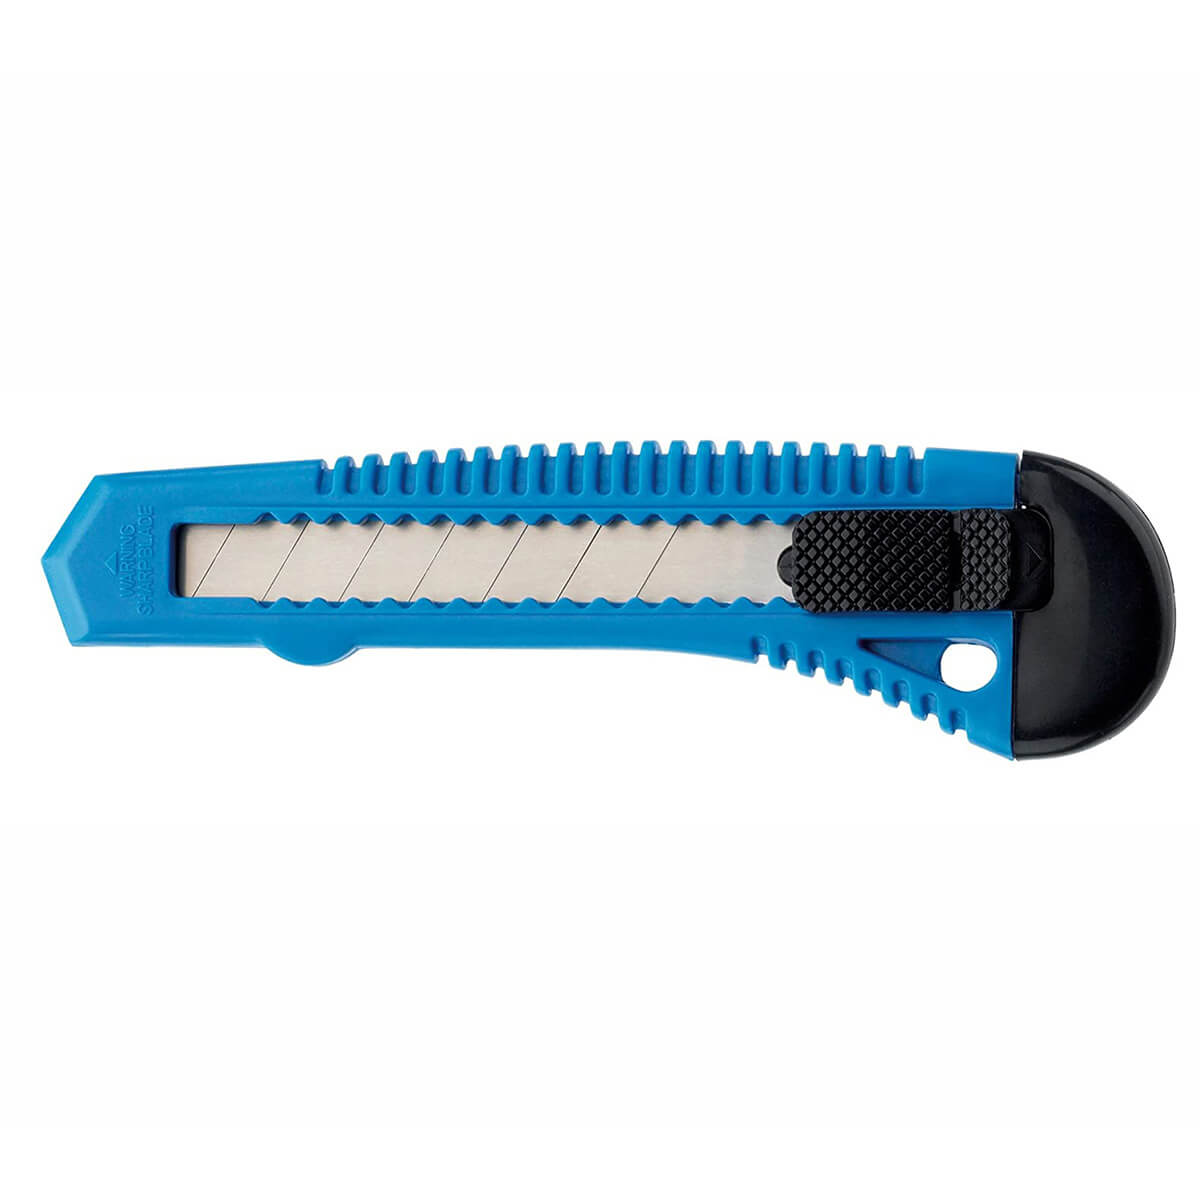 Cuttermesser mit Kunststoffgehäuse Klingenbreite 18 mm + 1 Abbrechklinge extra blau